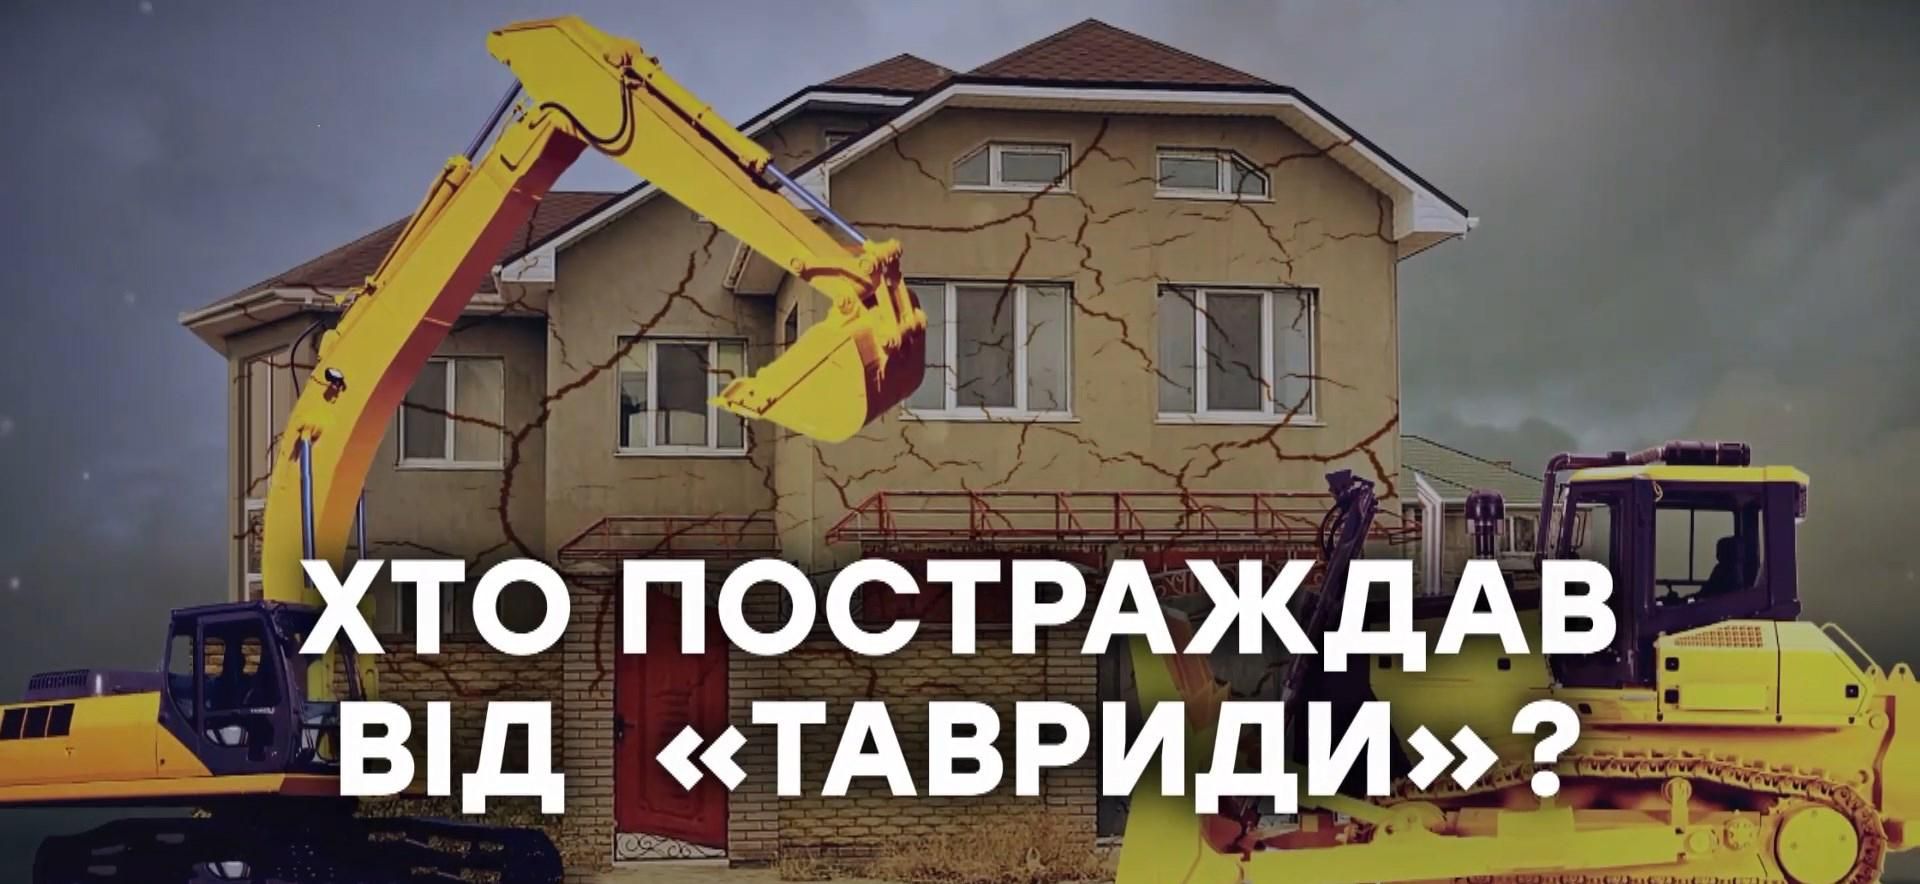 Забрали землю за бесценок: как оккупационная власть обманула крымчан